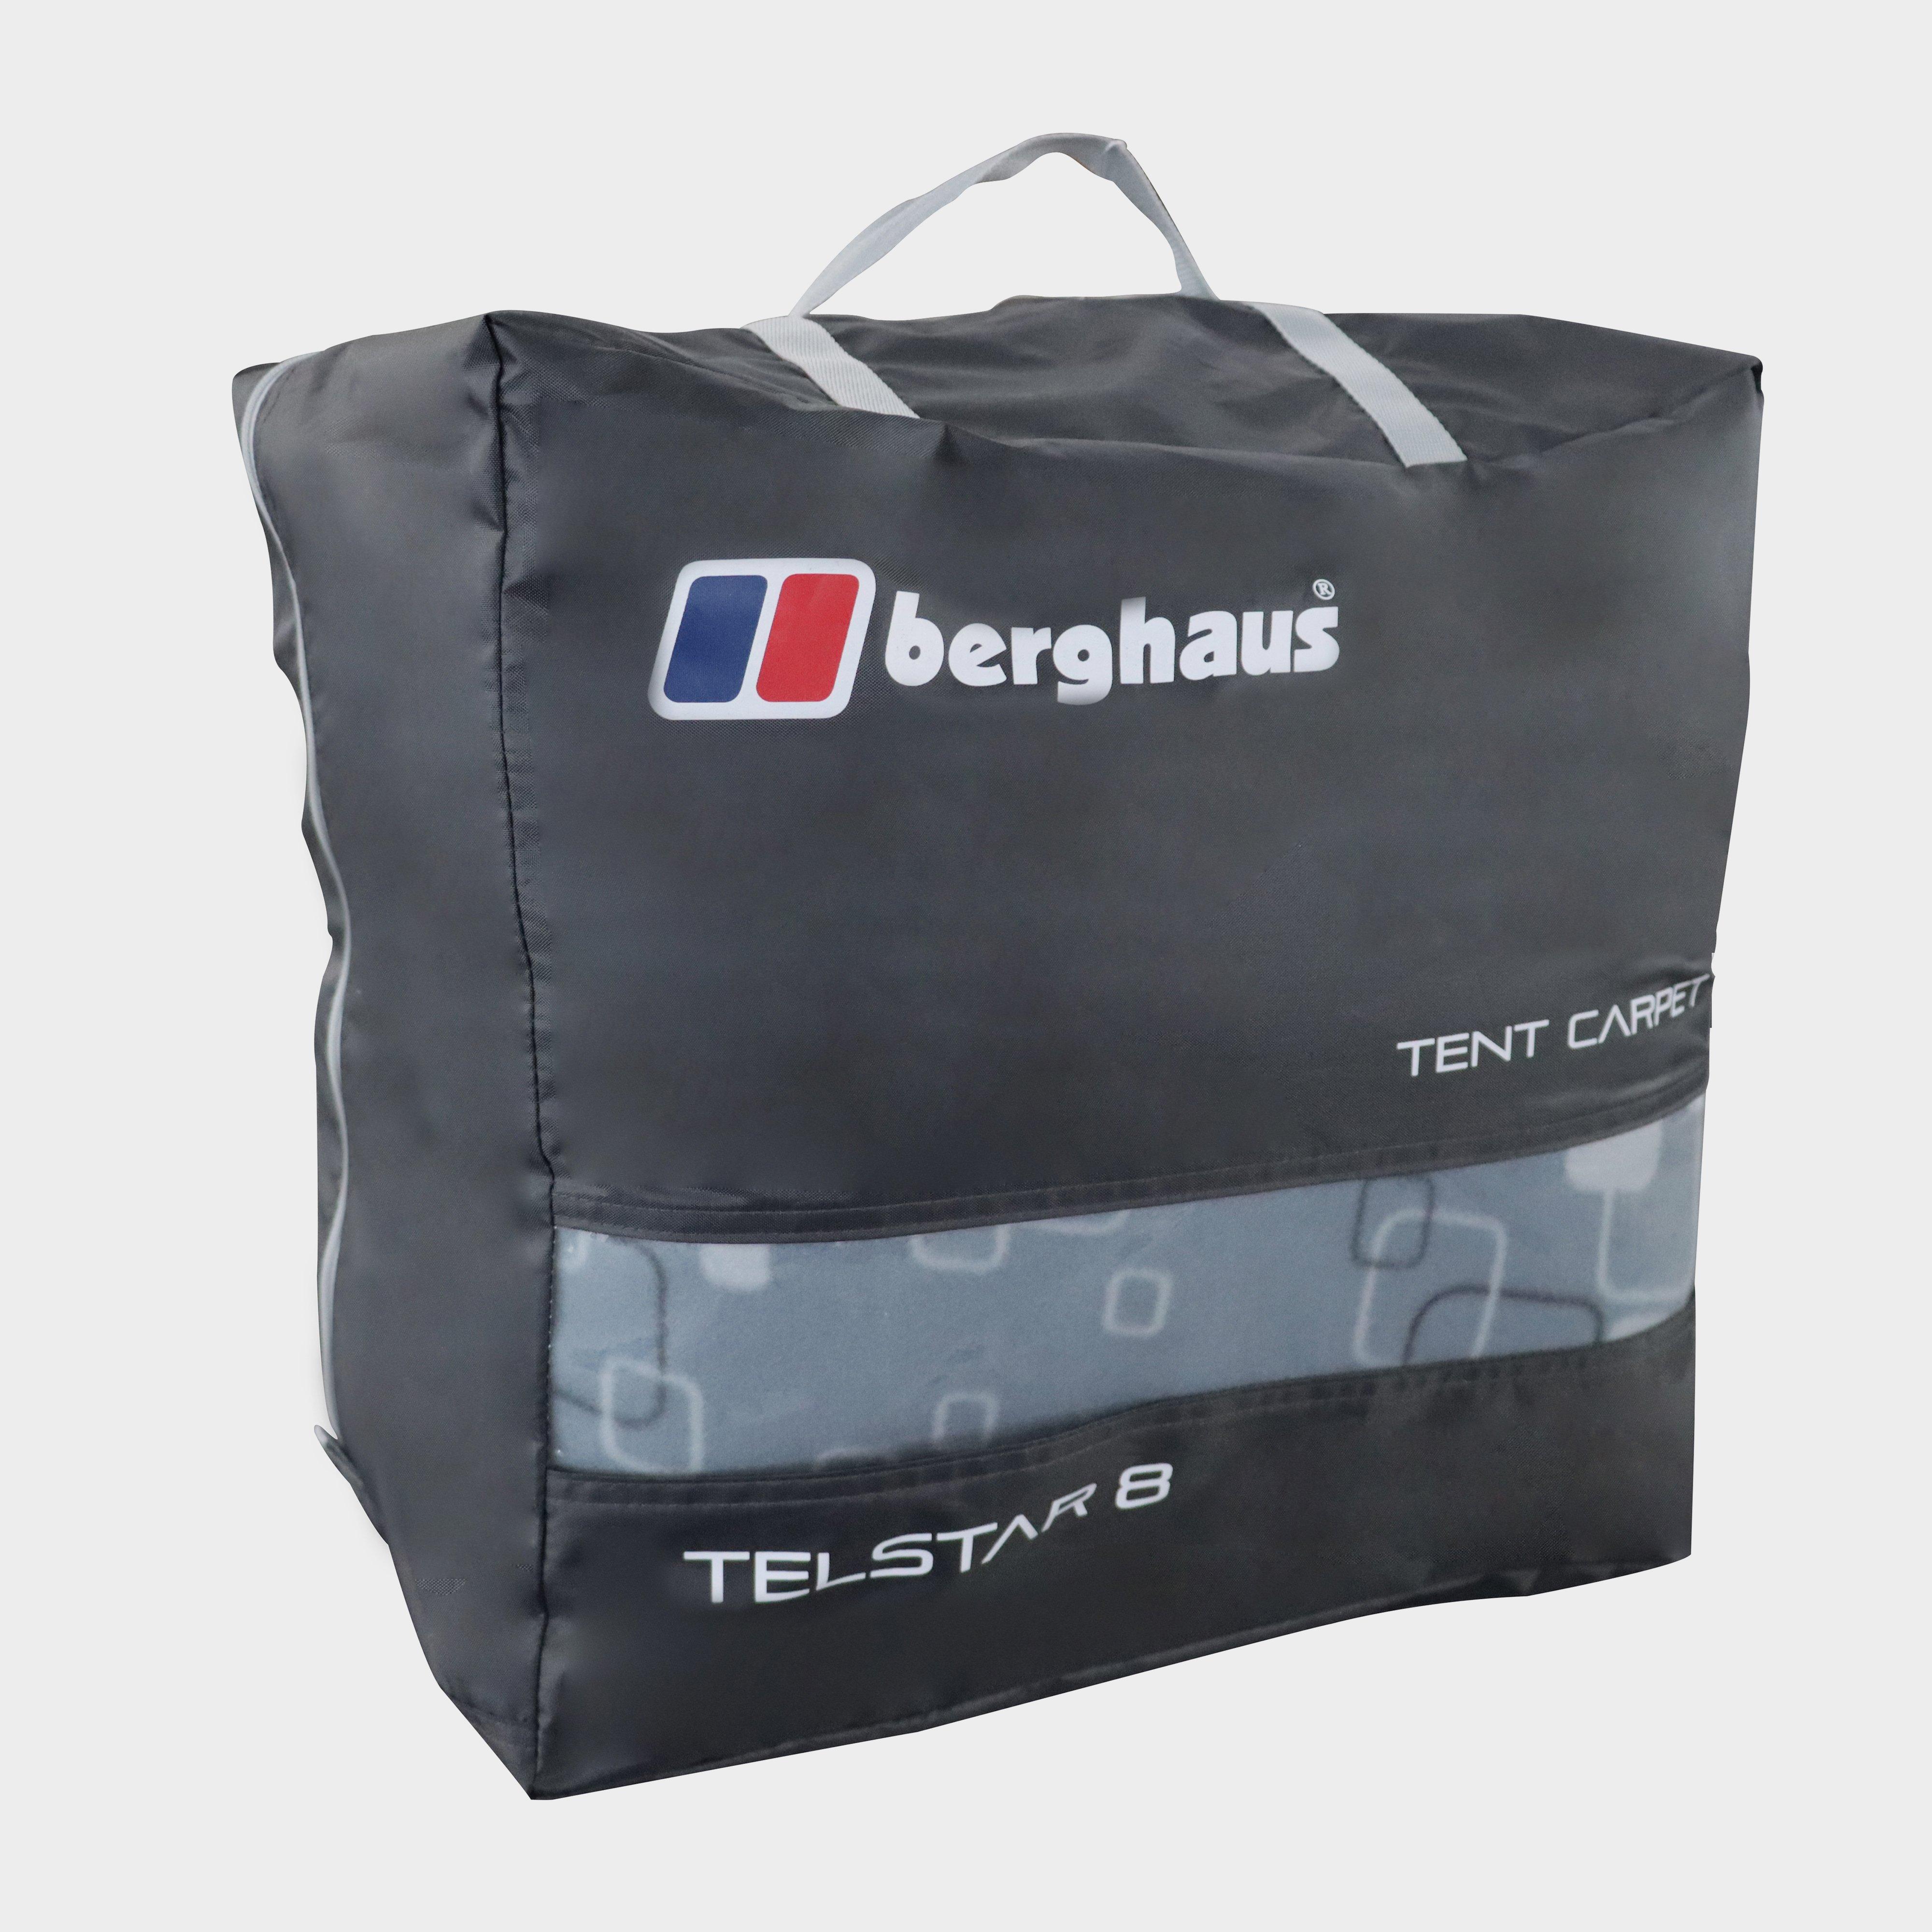 Berghaus Telstar 8 Tent Carpet - Multi/mul  Multi/mul